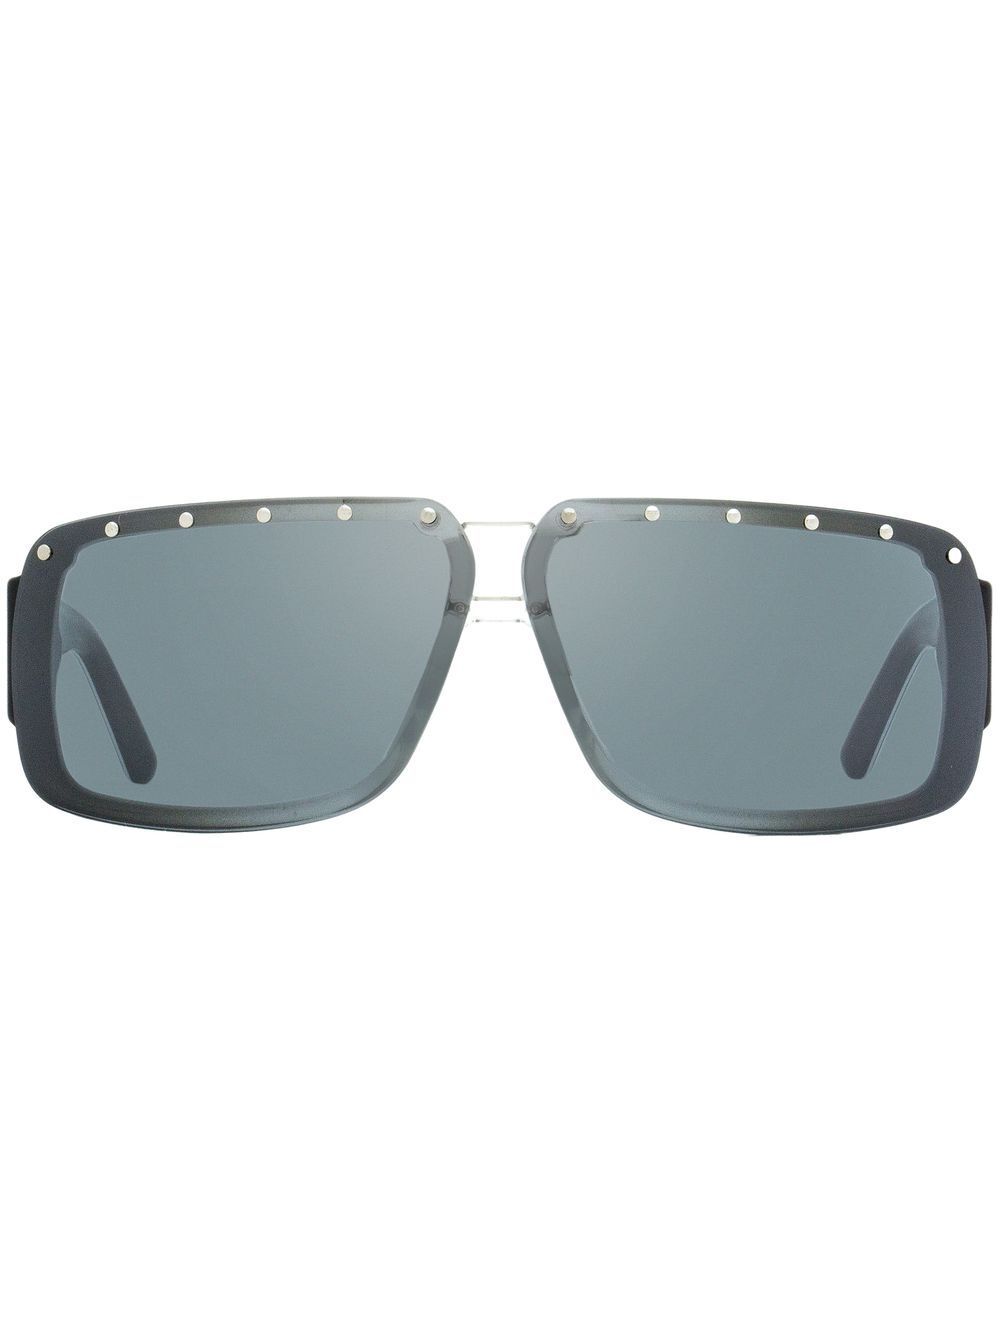 Jimmy Choo Eyewear Morris stud-detail sunglasses - Grey